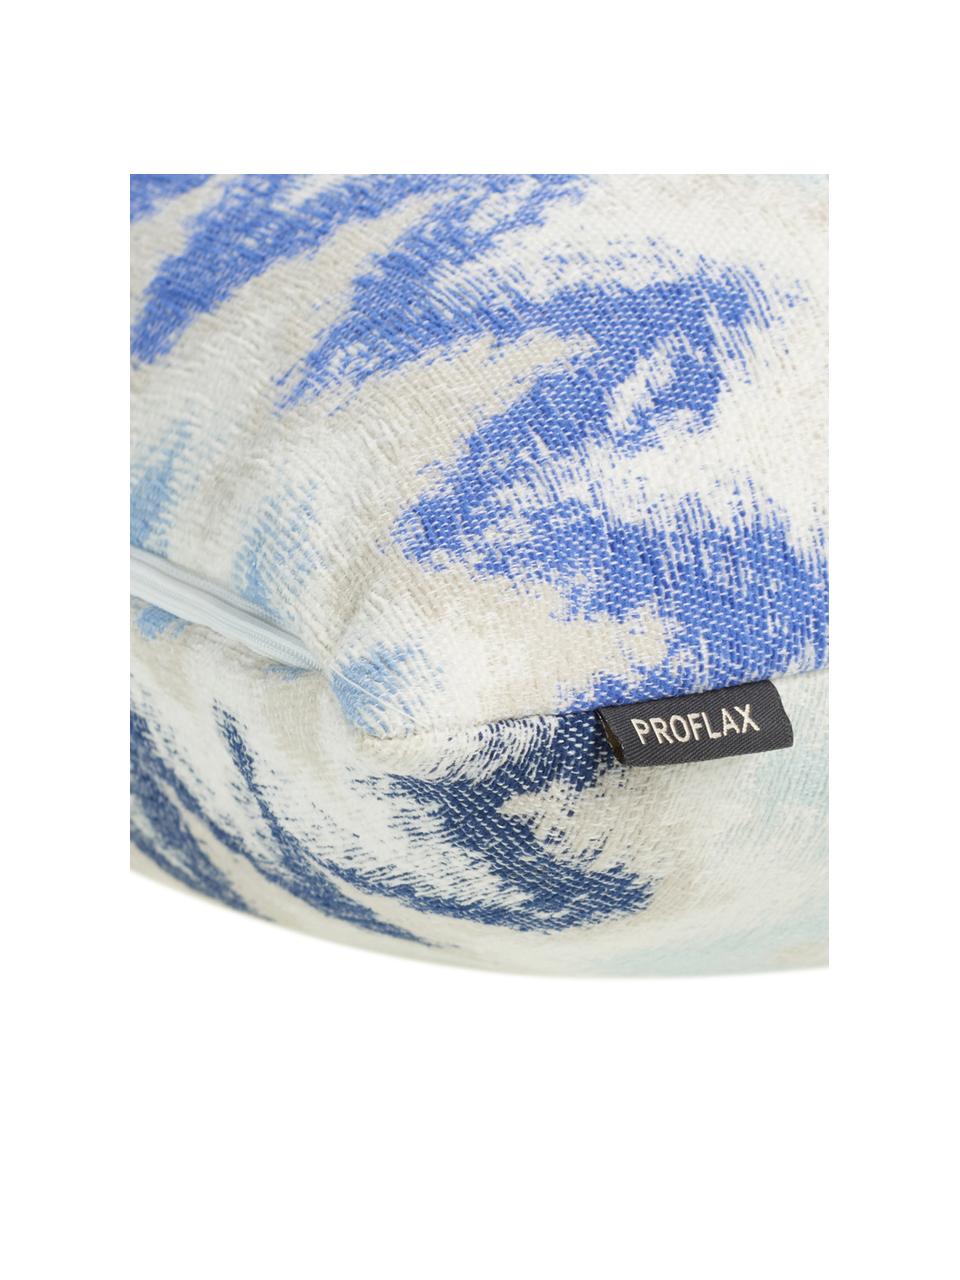 Kussenhoes Pari met zigzag patroon, Polyester, Lichtbeige, blauwtinten, 45 x 45 cm